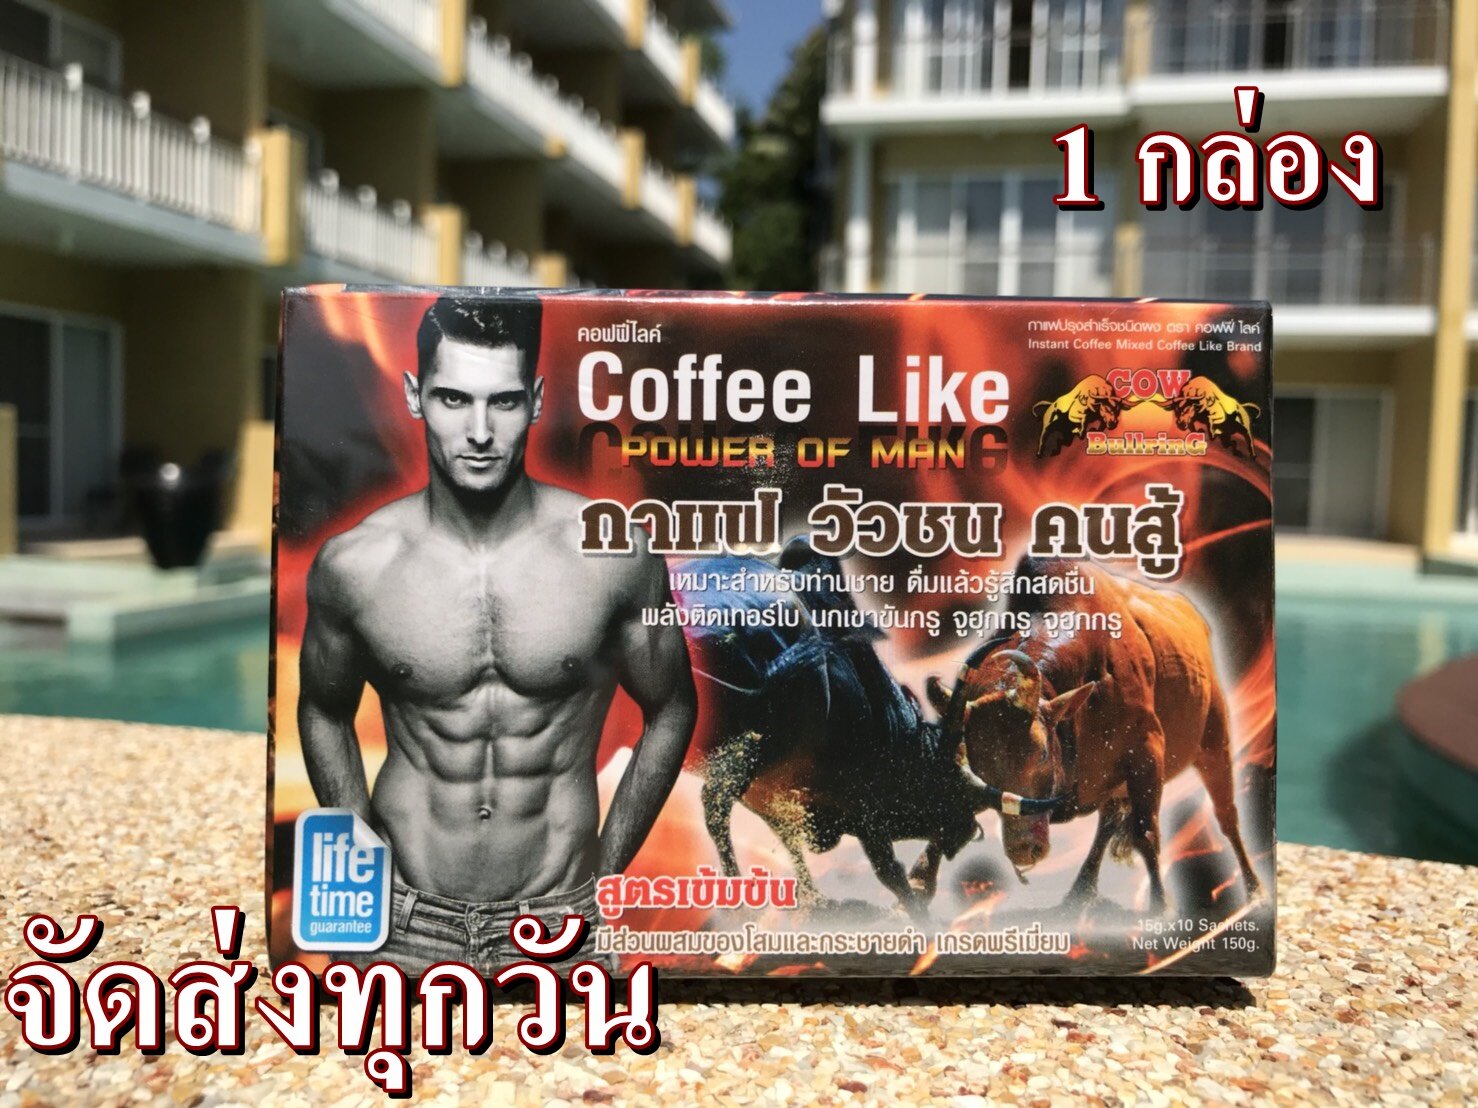 กาแฟ วัวชน คนสู้ coffee like ของแท้ เพิ่มพลังให้ท่านชาย (1กล่อง)